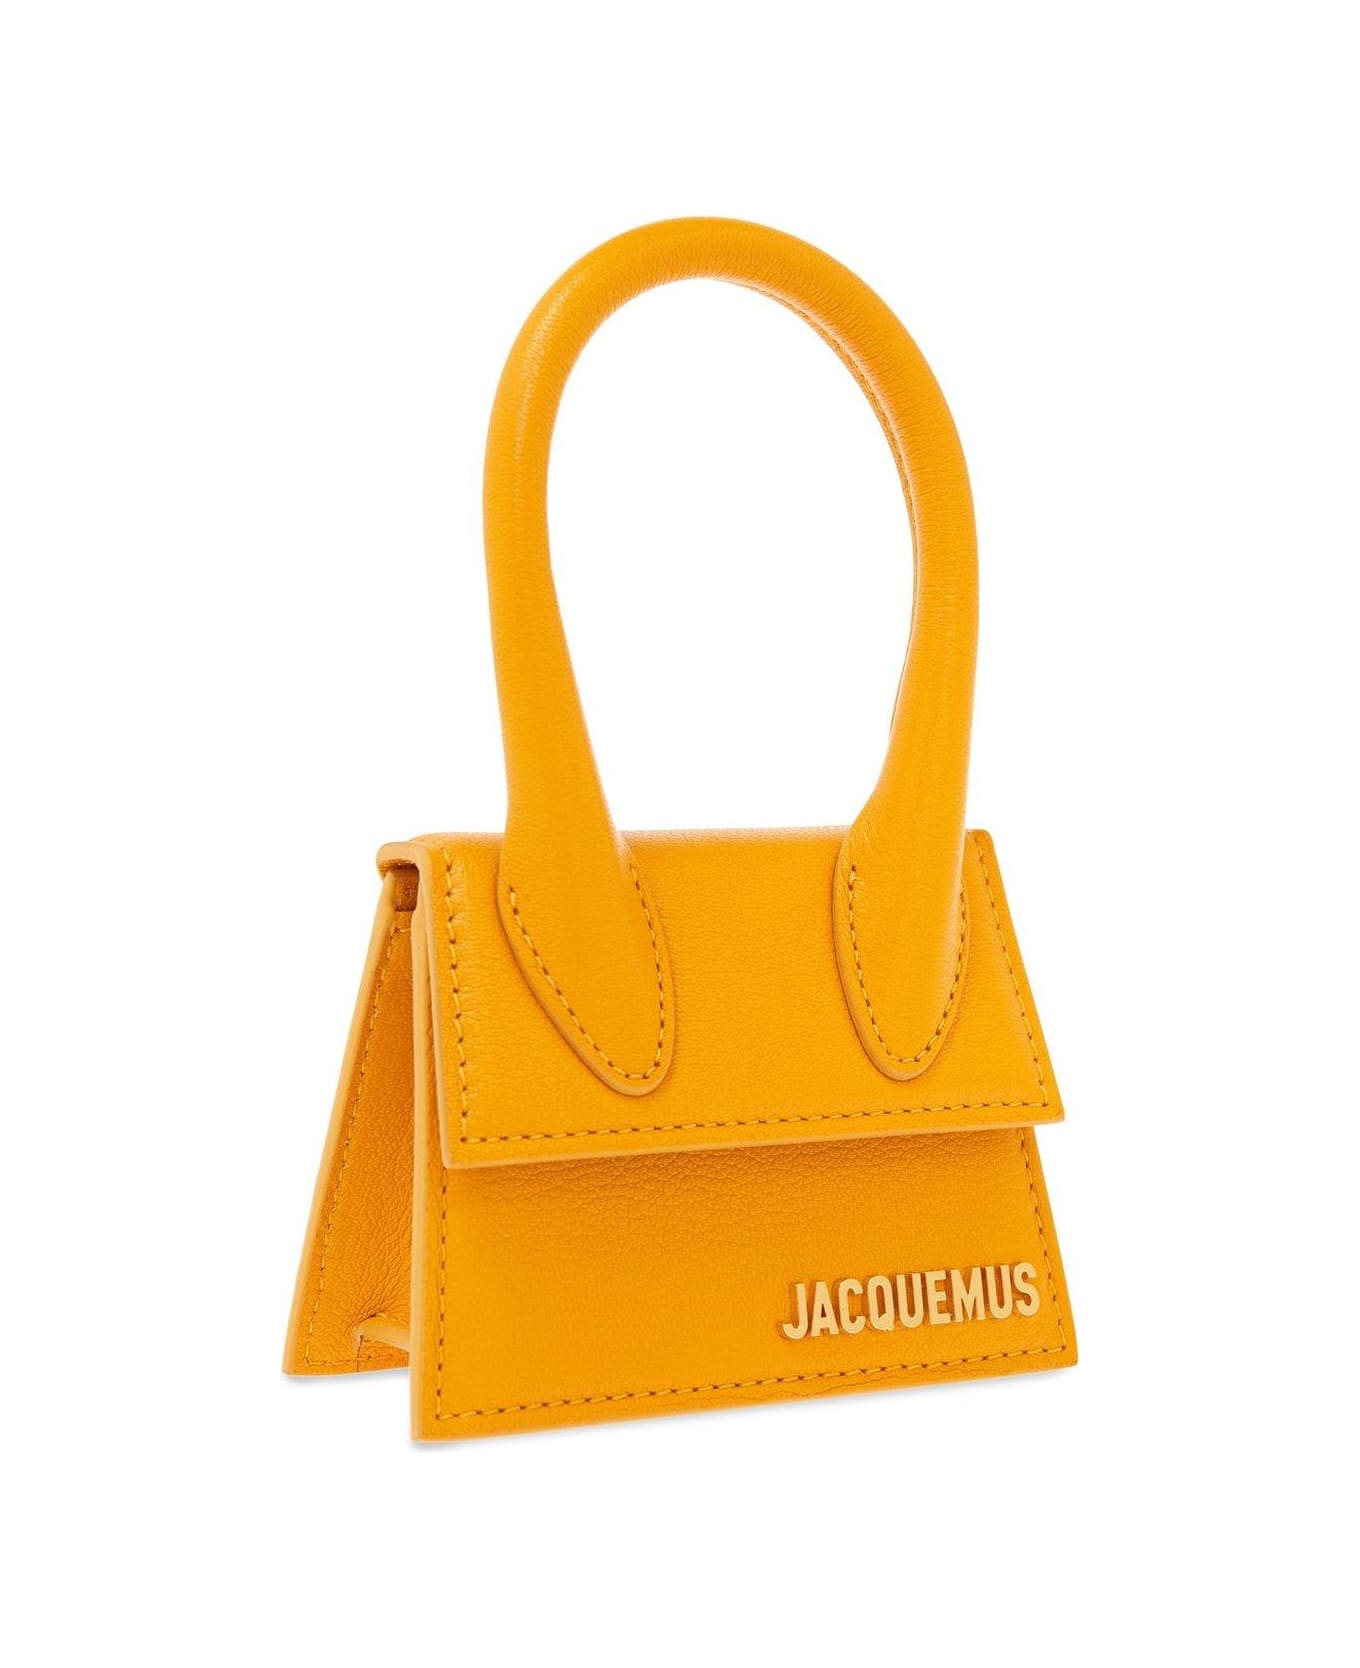 Jacquemus Le Chiquito Signature Handbag - ORANGE トートバッグ